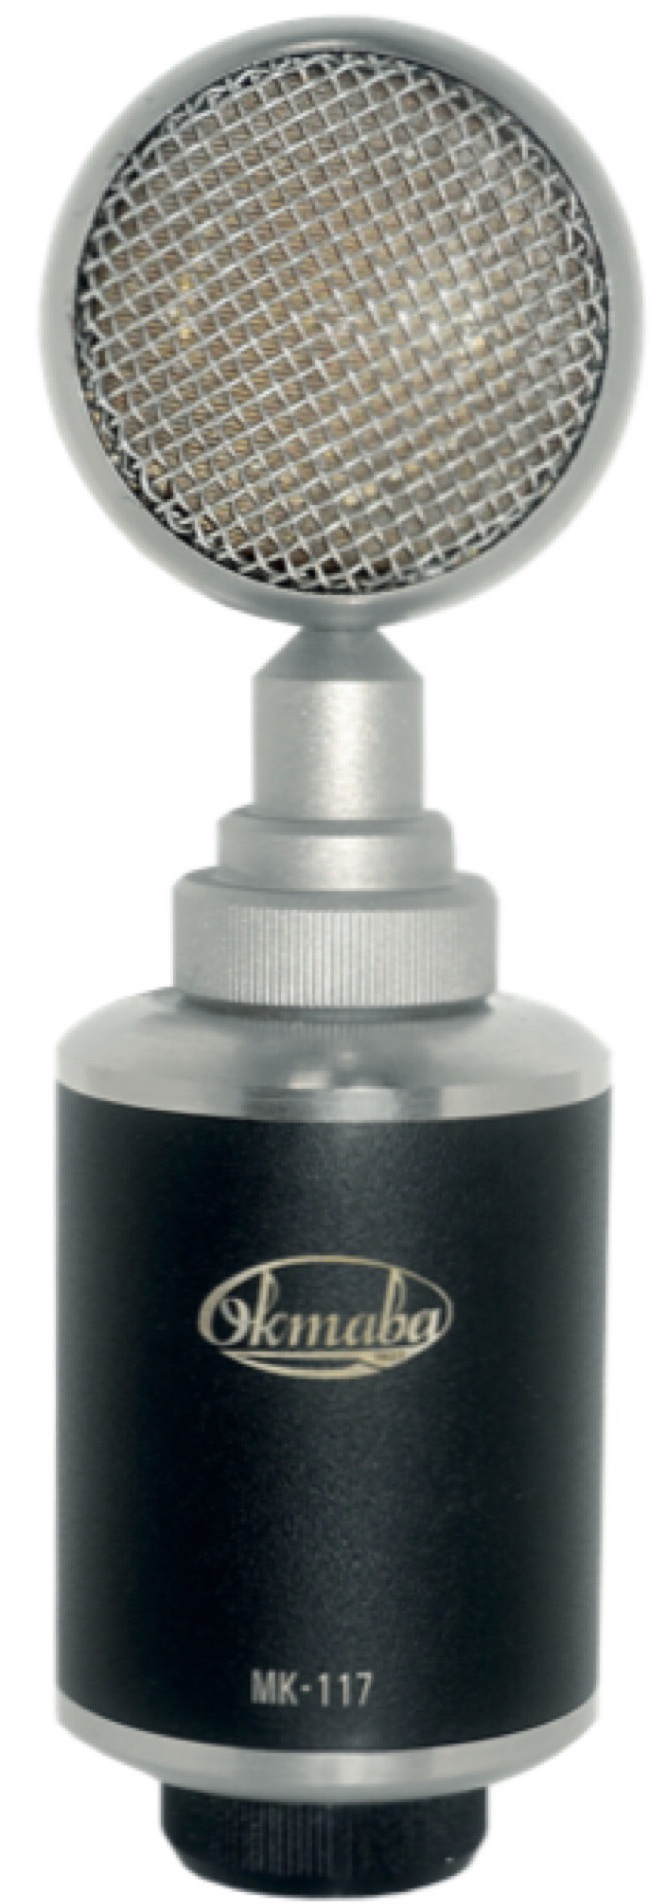 Студийные микрофоны Октава МК-117 (черный) микрофон октава мк 012 40 серебристый